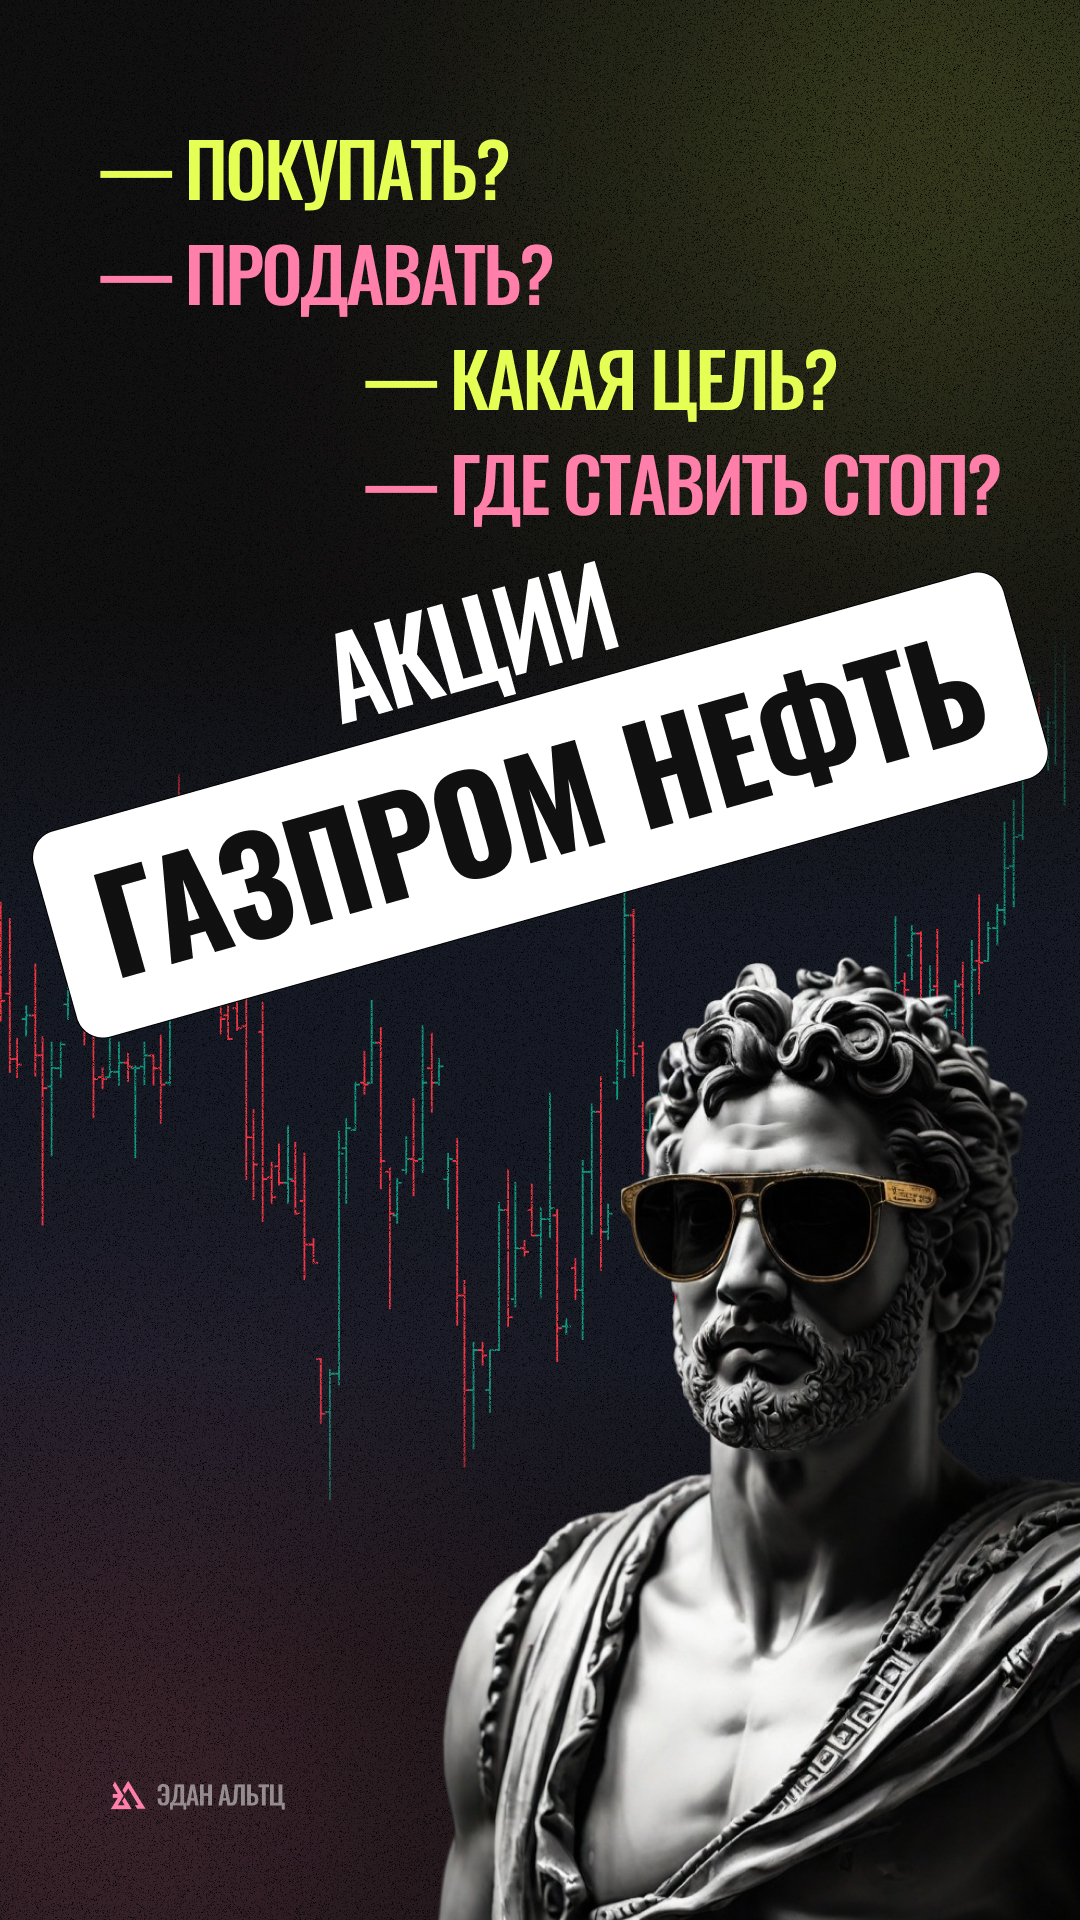 🔥 Акции Газпром нефть $SIBN — идея \ цели \ стопы \ обзор